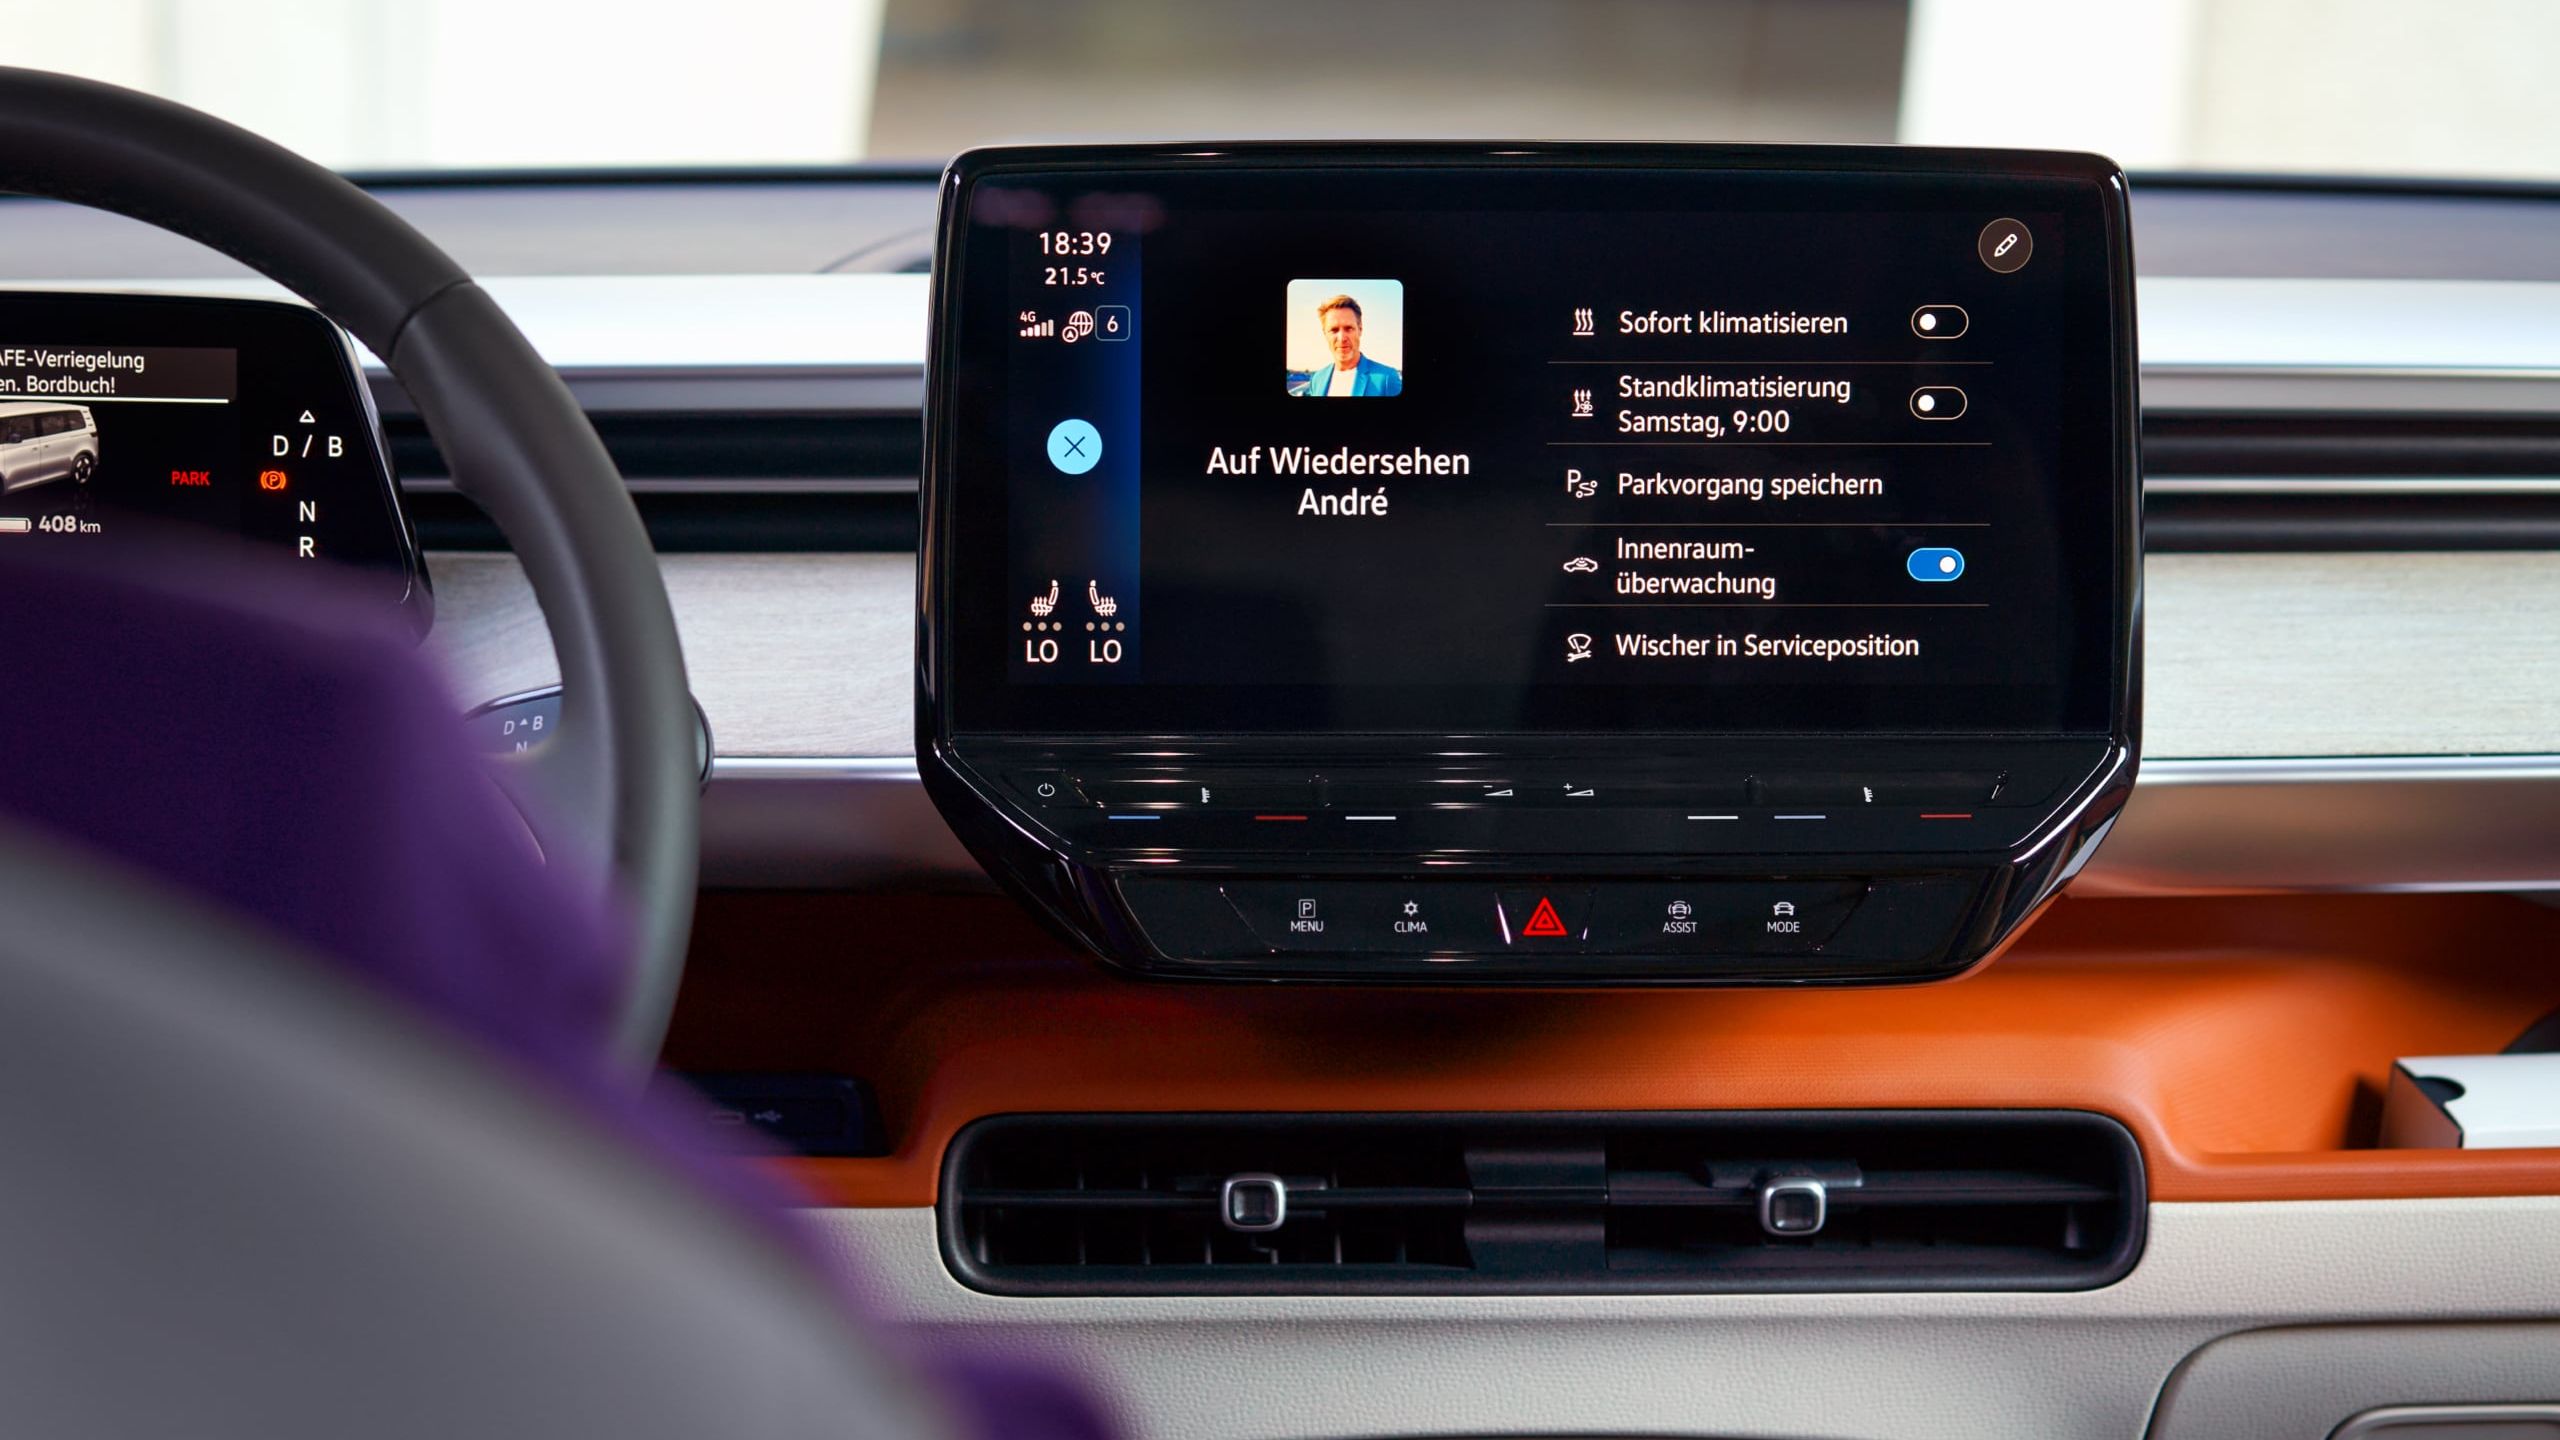 Digital Cockpit des VW ID. Buzz mit Sprachsteuerung und Interieurakzente in orange